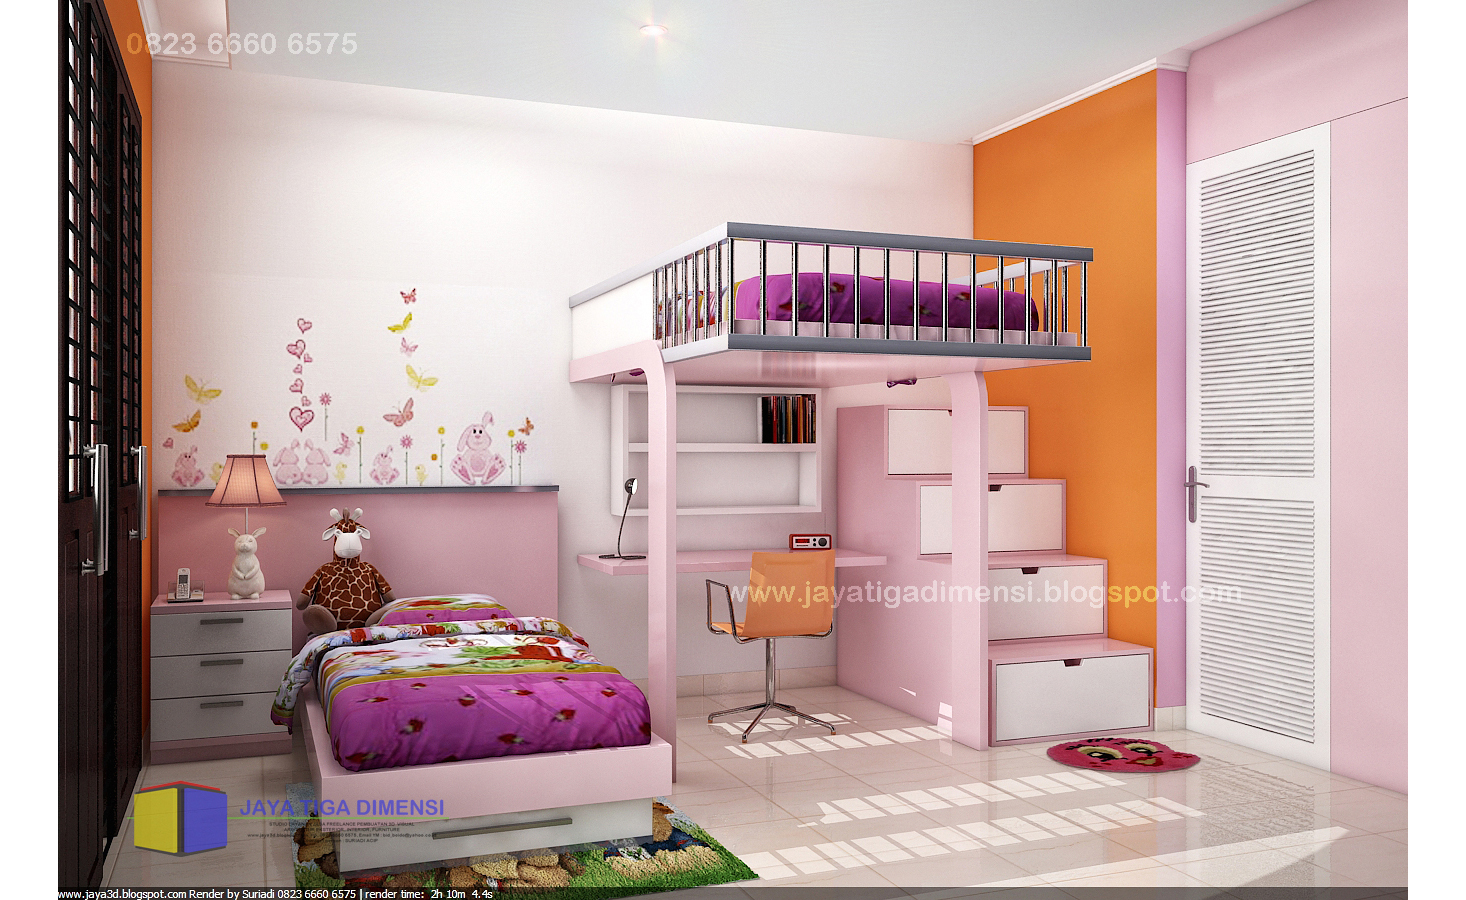 Desain Rumah Impian Anak : RUMAH DIJUAL: Rumah impian setiap anak muda nih : Bentuk ruang yang ada juga direncanakan dengan lurus dan rapi, menghasilan tampilan yang sangat mengesankan.